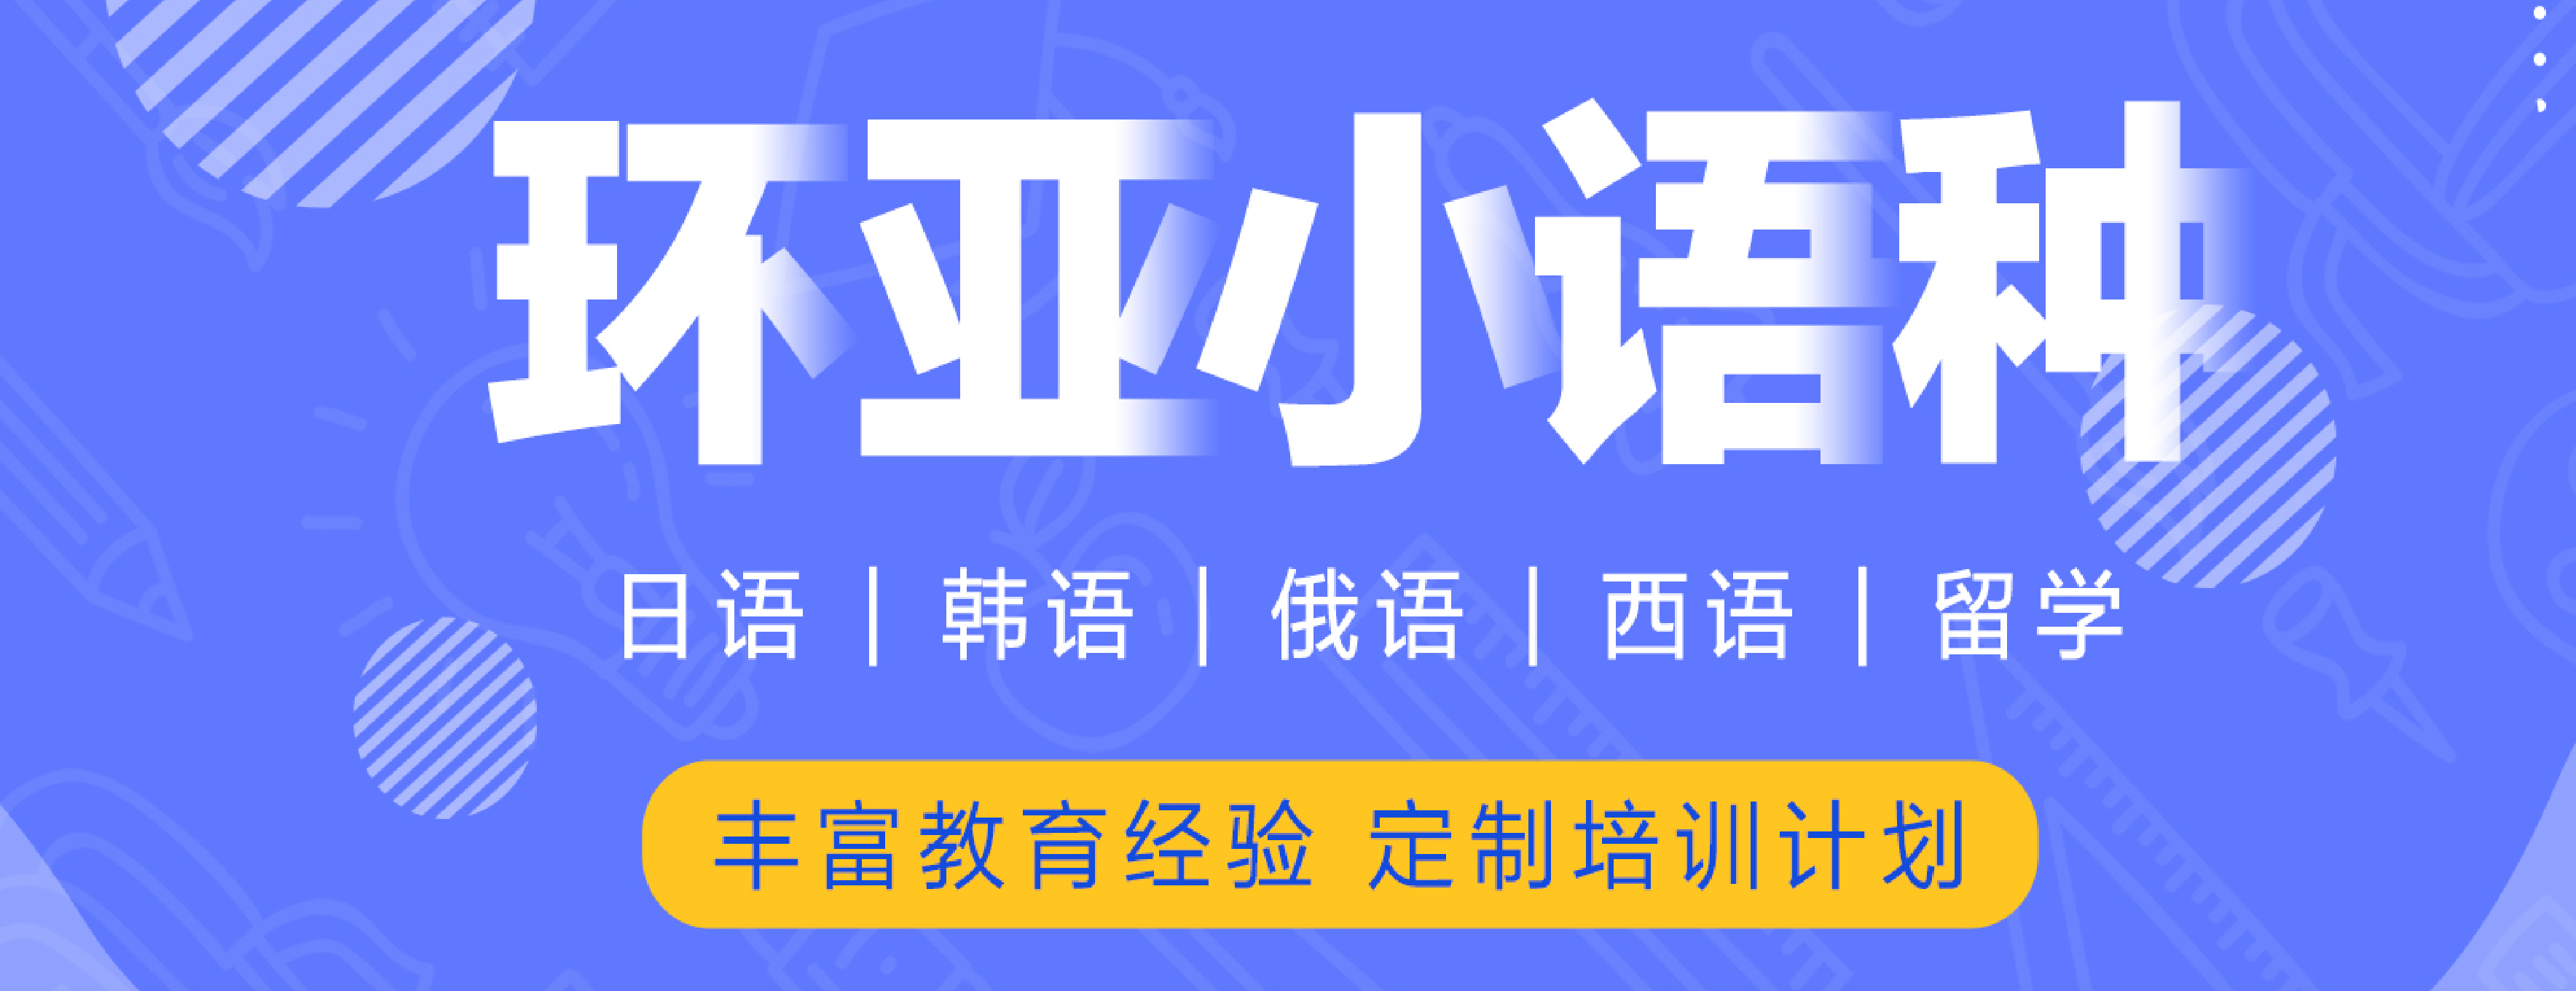 南京环亚语言培训中心